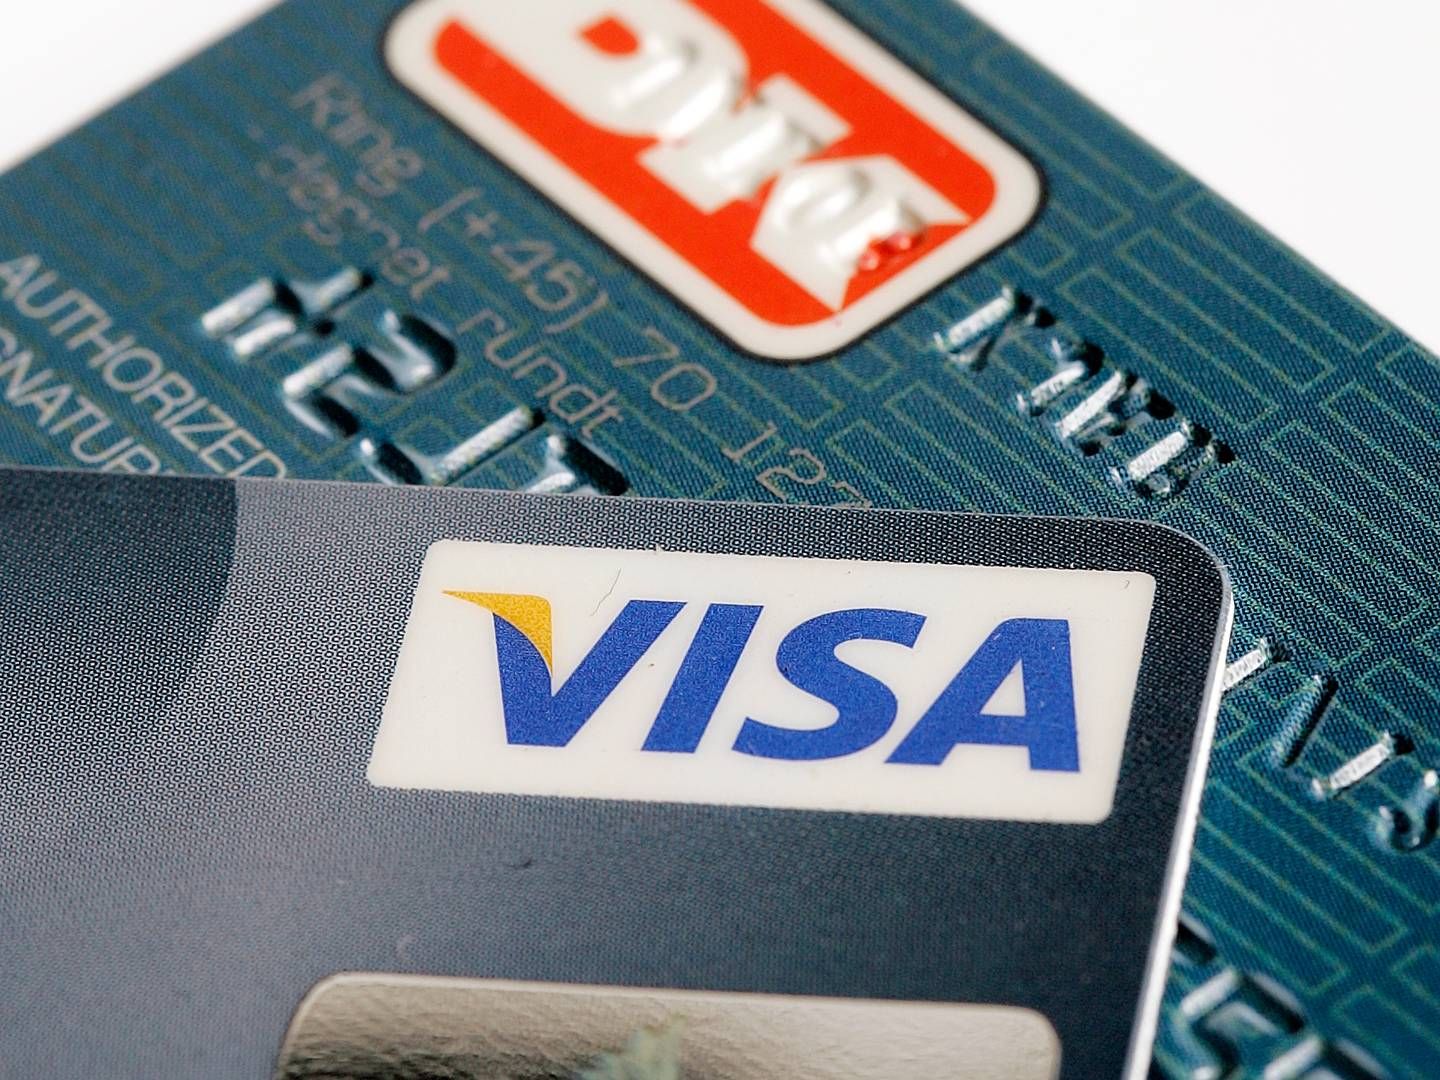 De internationale betalingskort fylder nu mere end dankortet på det danske betalingsmarked. | Foto: Finn Frandsen